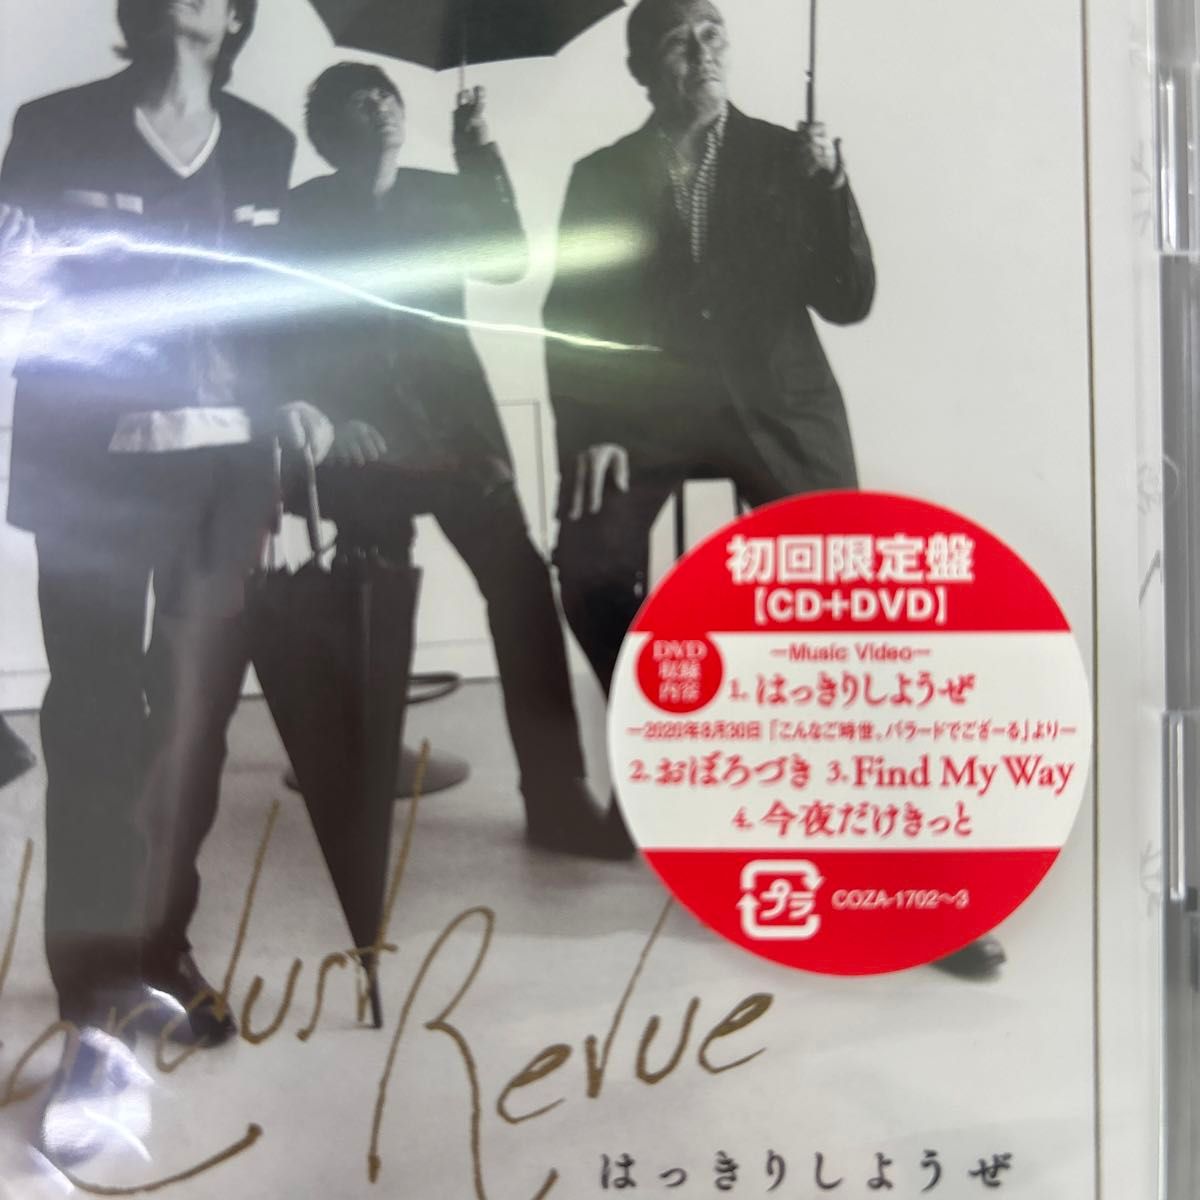 初回限定盤 (取) DVD付 スターダスト☆レビュー CD+DVD/はっきりしようぜ 20/11/25発売 オリコン加盟店